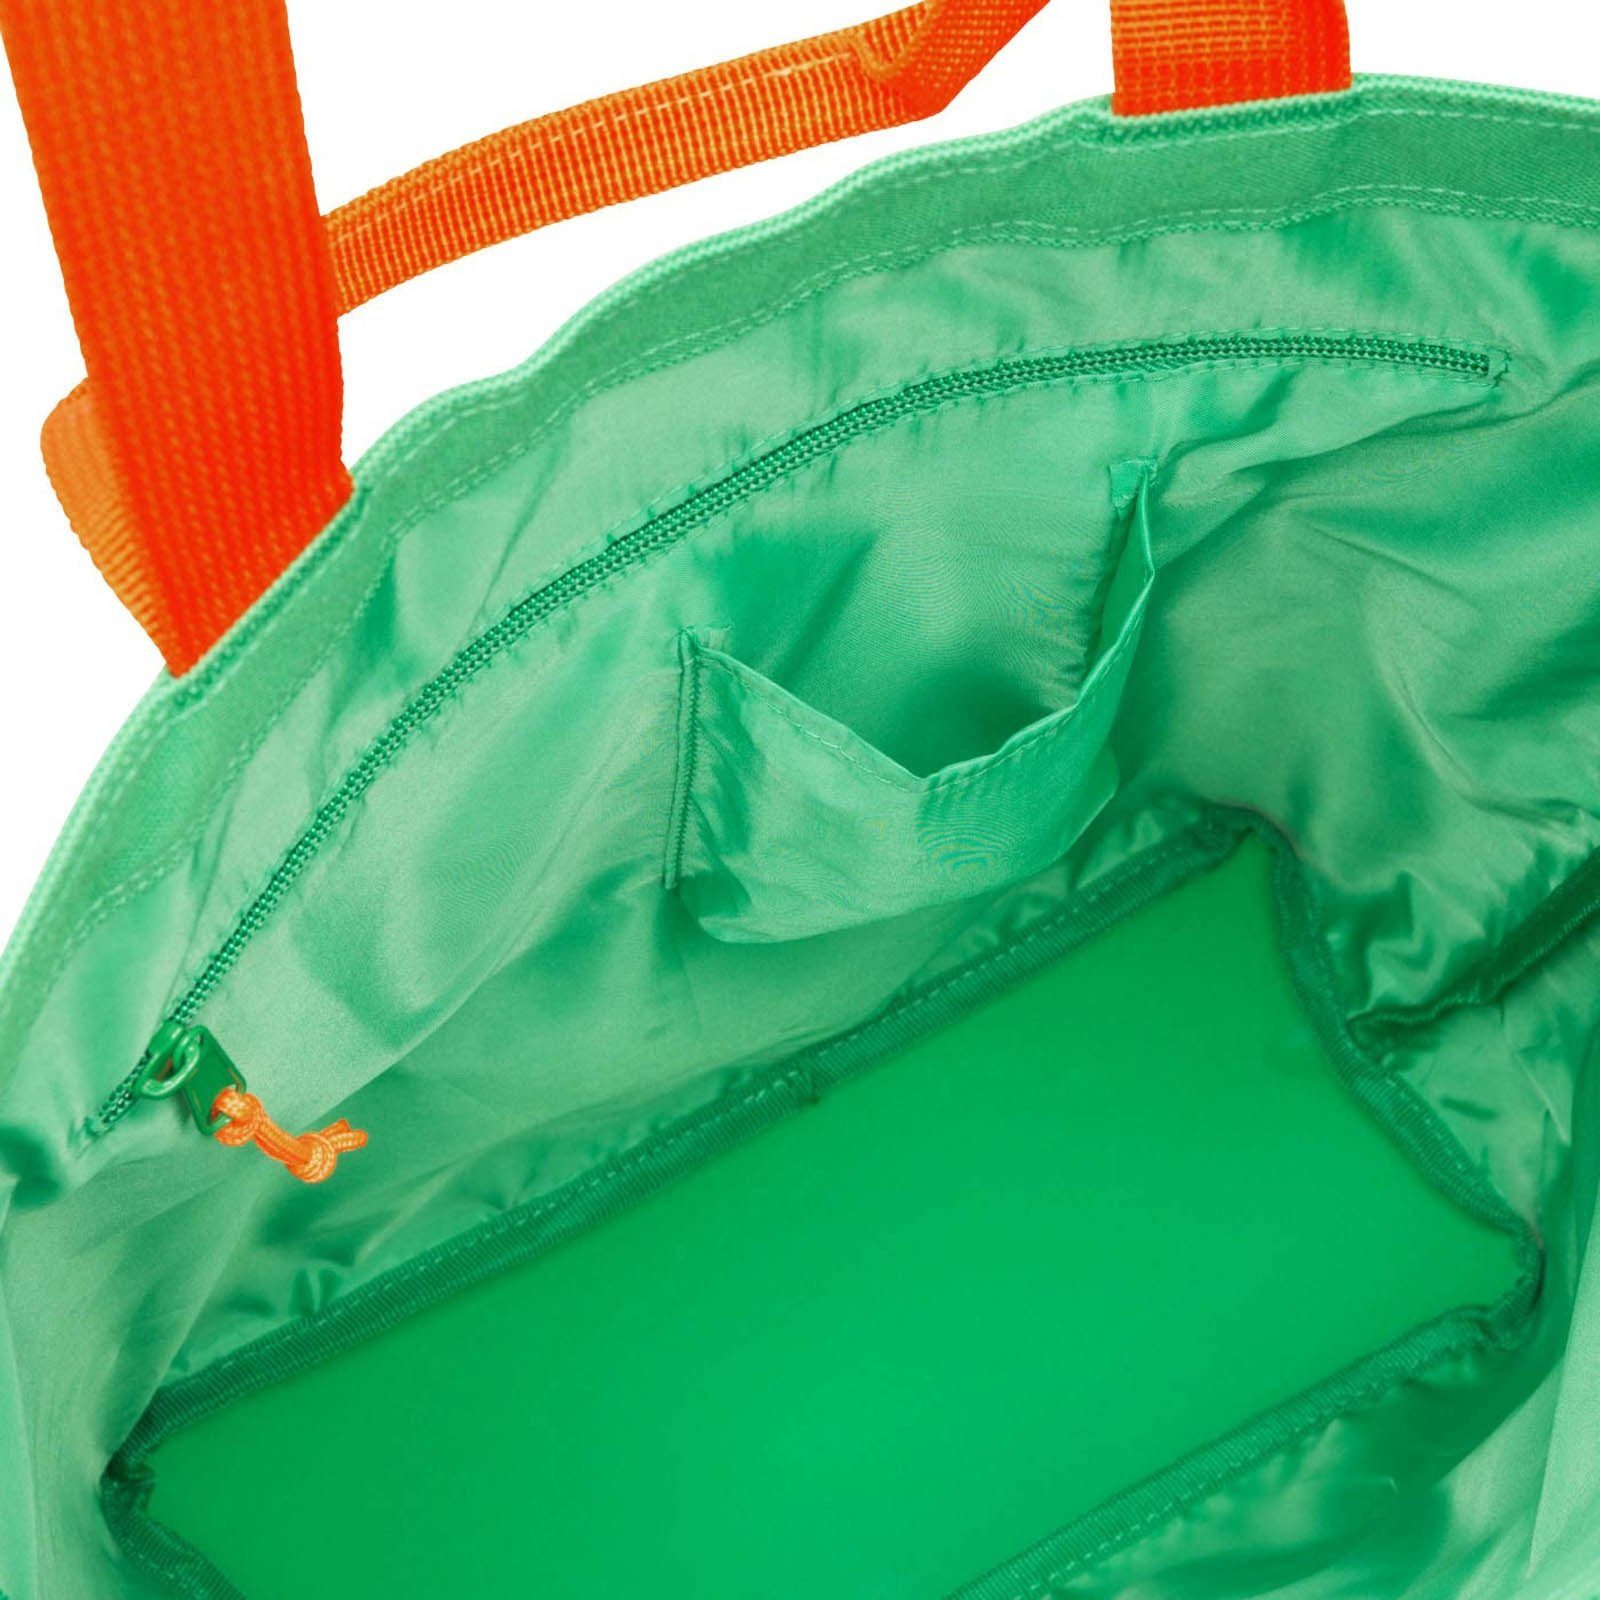 REISENTHEL® Einkaufsbeutel Einkaufstasche KIDS familybag summer green